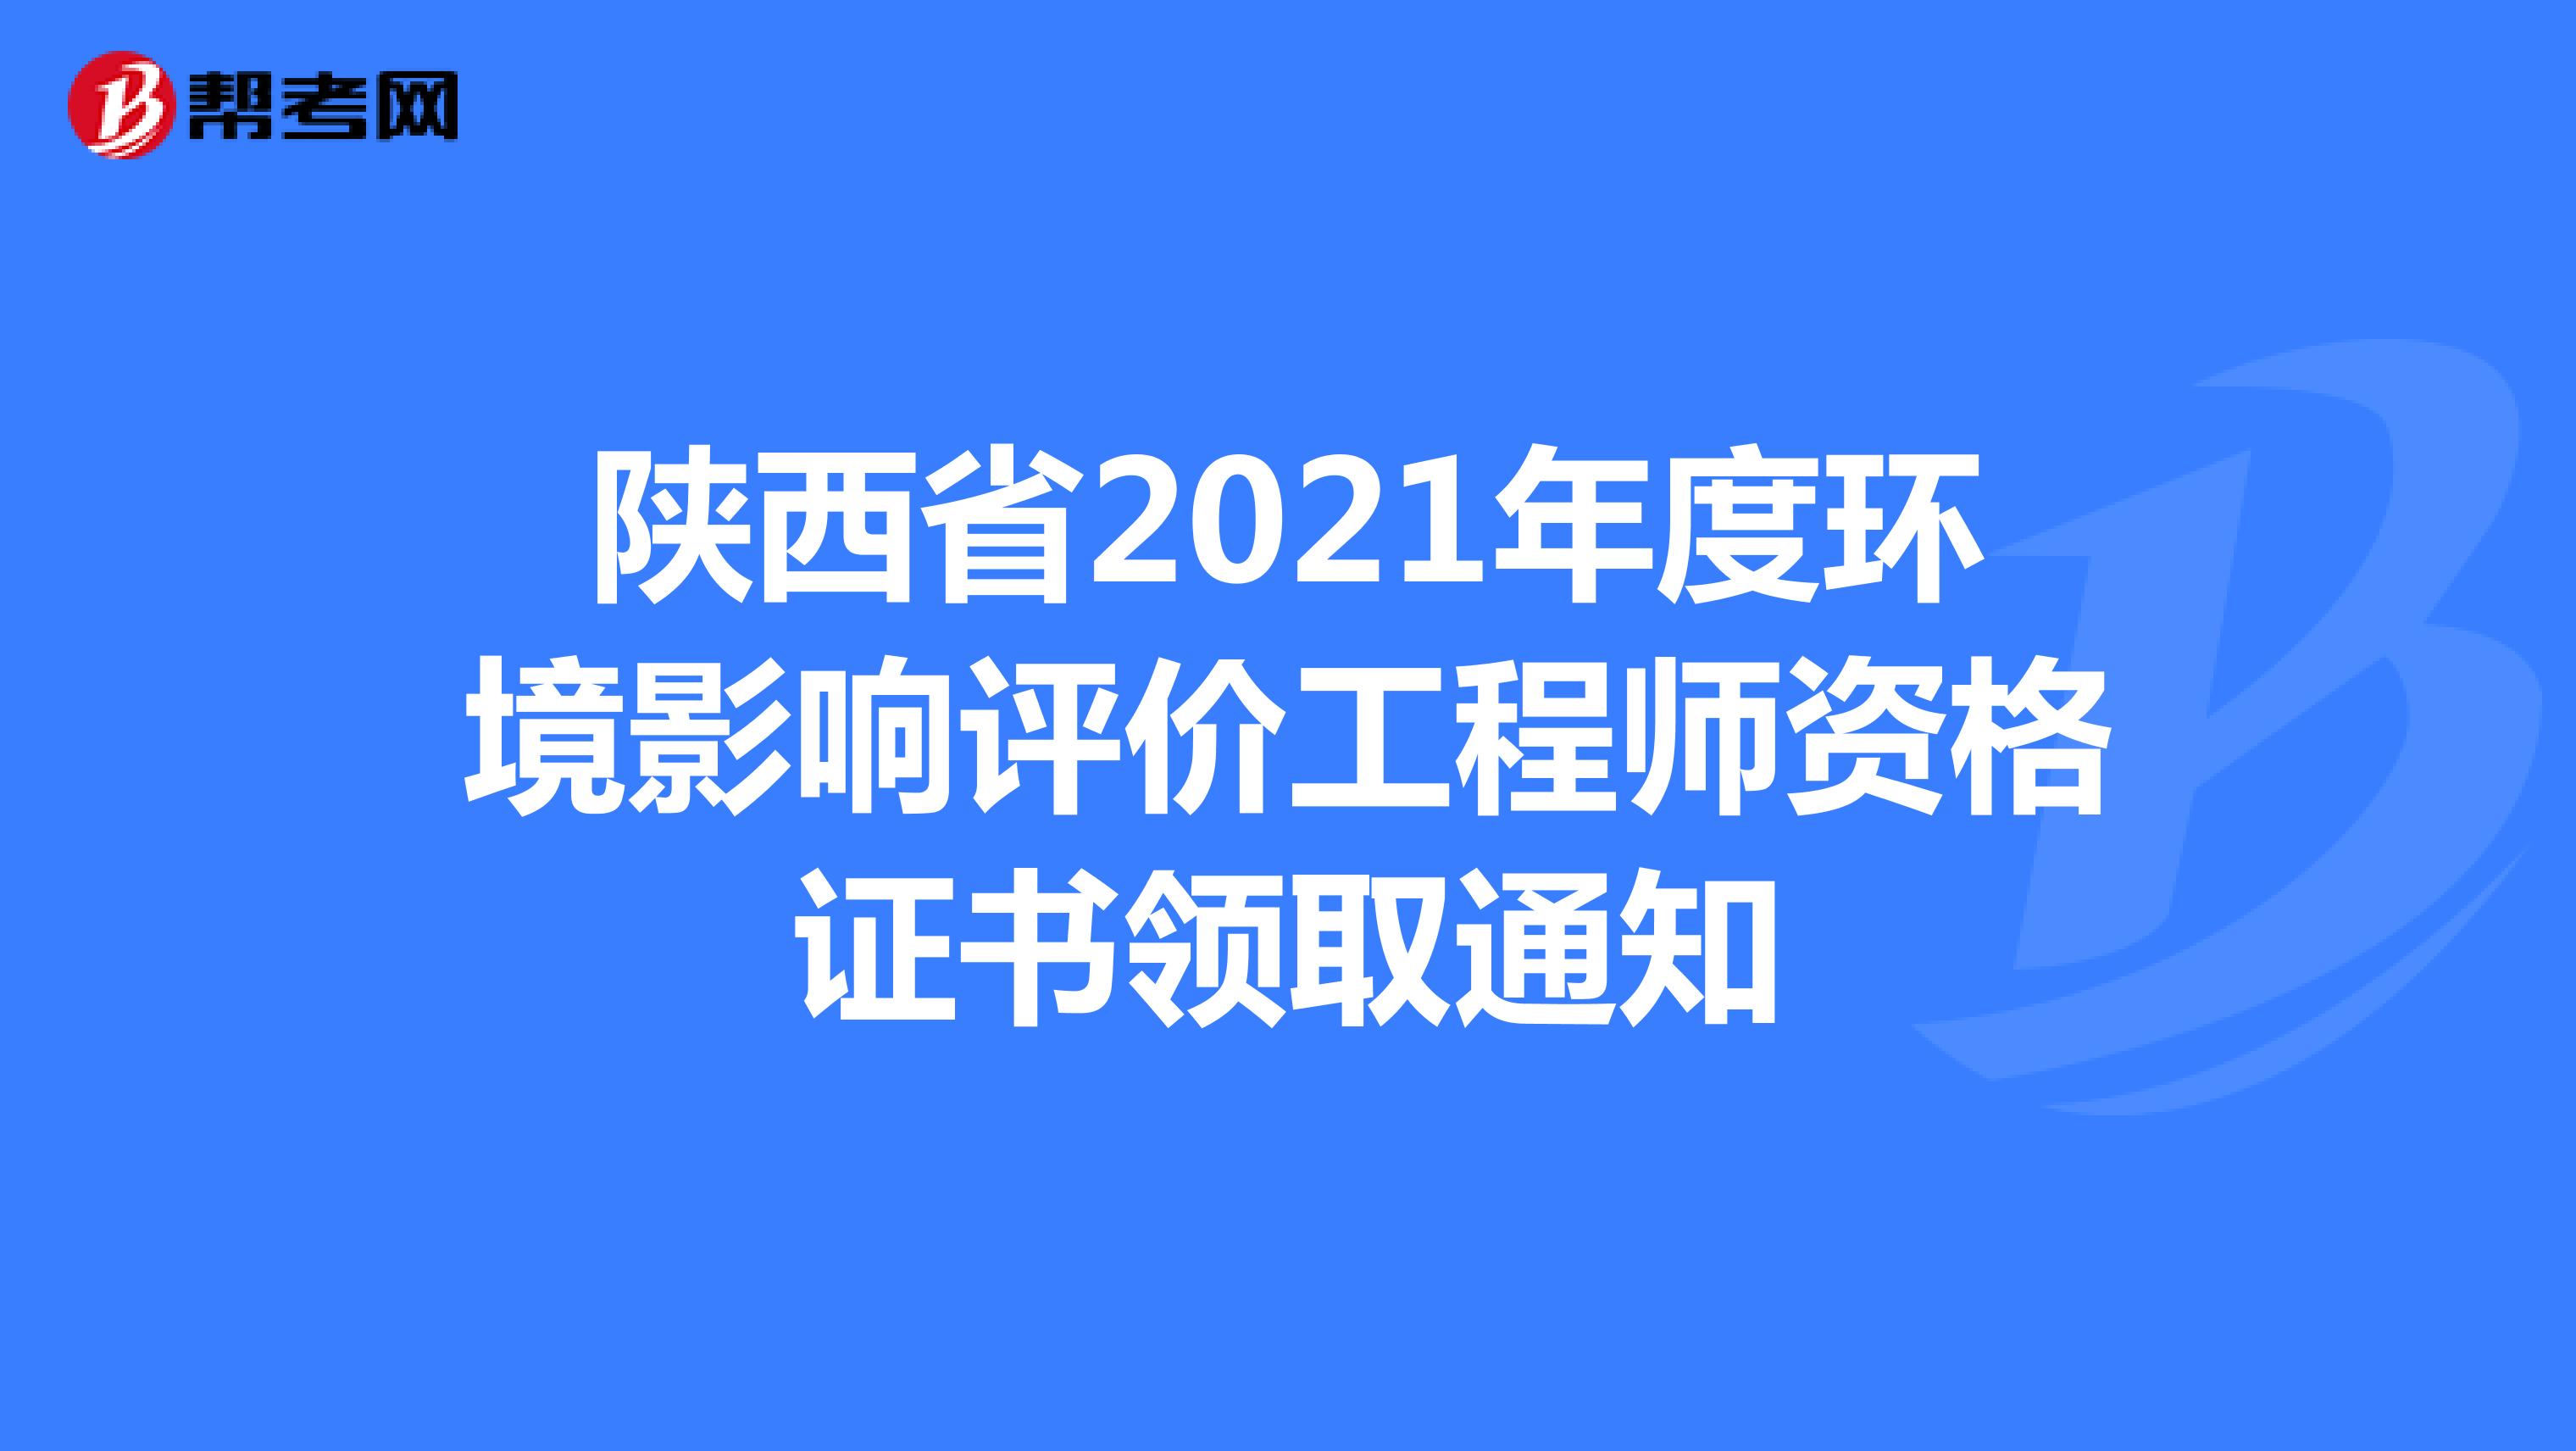 陕西省2021年度环境影响评价工程师资格证书领取通知